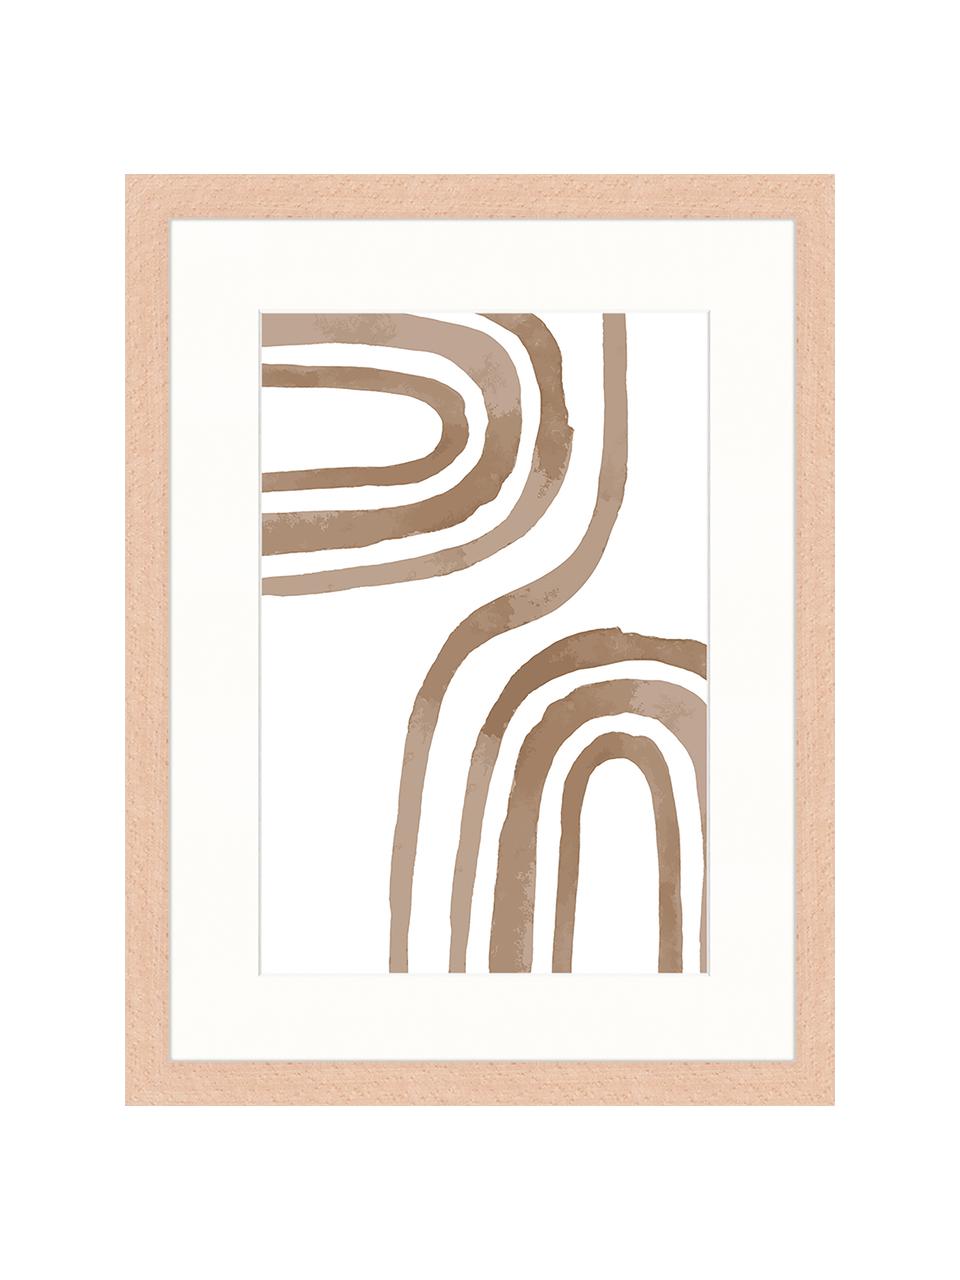 Gerahmter Digitaldruck Modern Poster, Bild: Digitaldruck auf Papier, , Rahmen: Holz, lackiert, Front: Plexiglas, Braun, Weiß, B 33 x H 43 cm